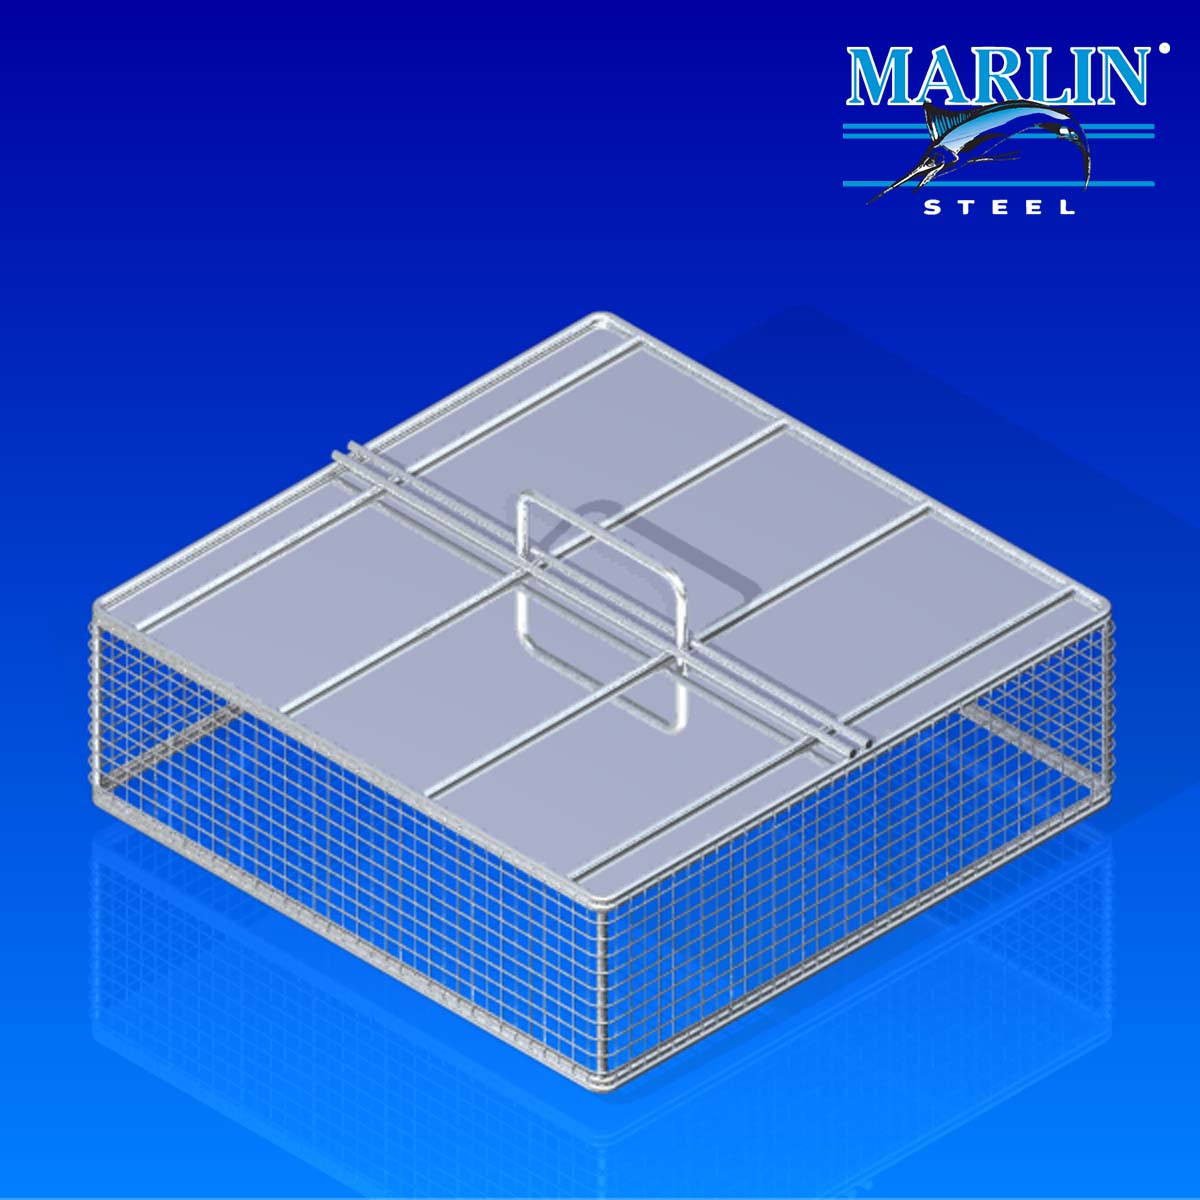 伟德APPMarlin Steel Wire Basket with Lid 441001-1.jpg